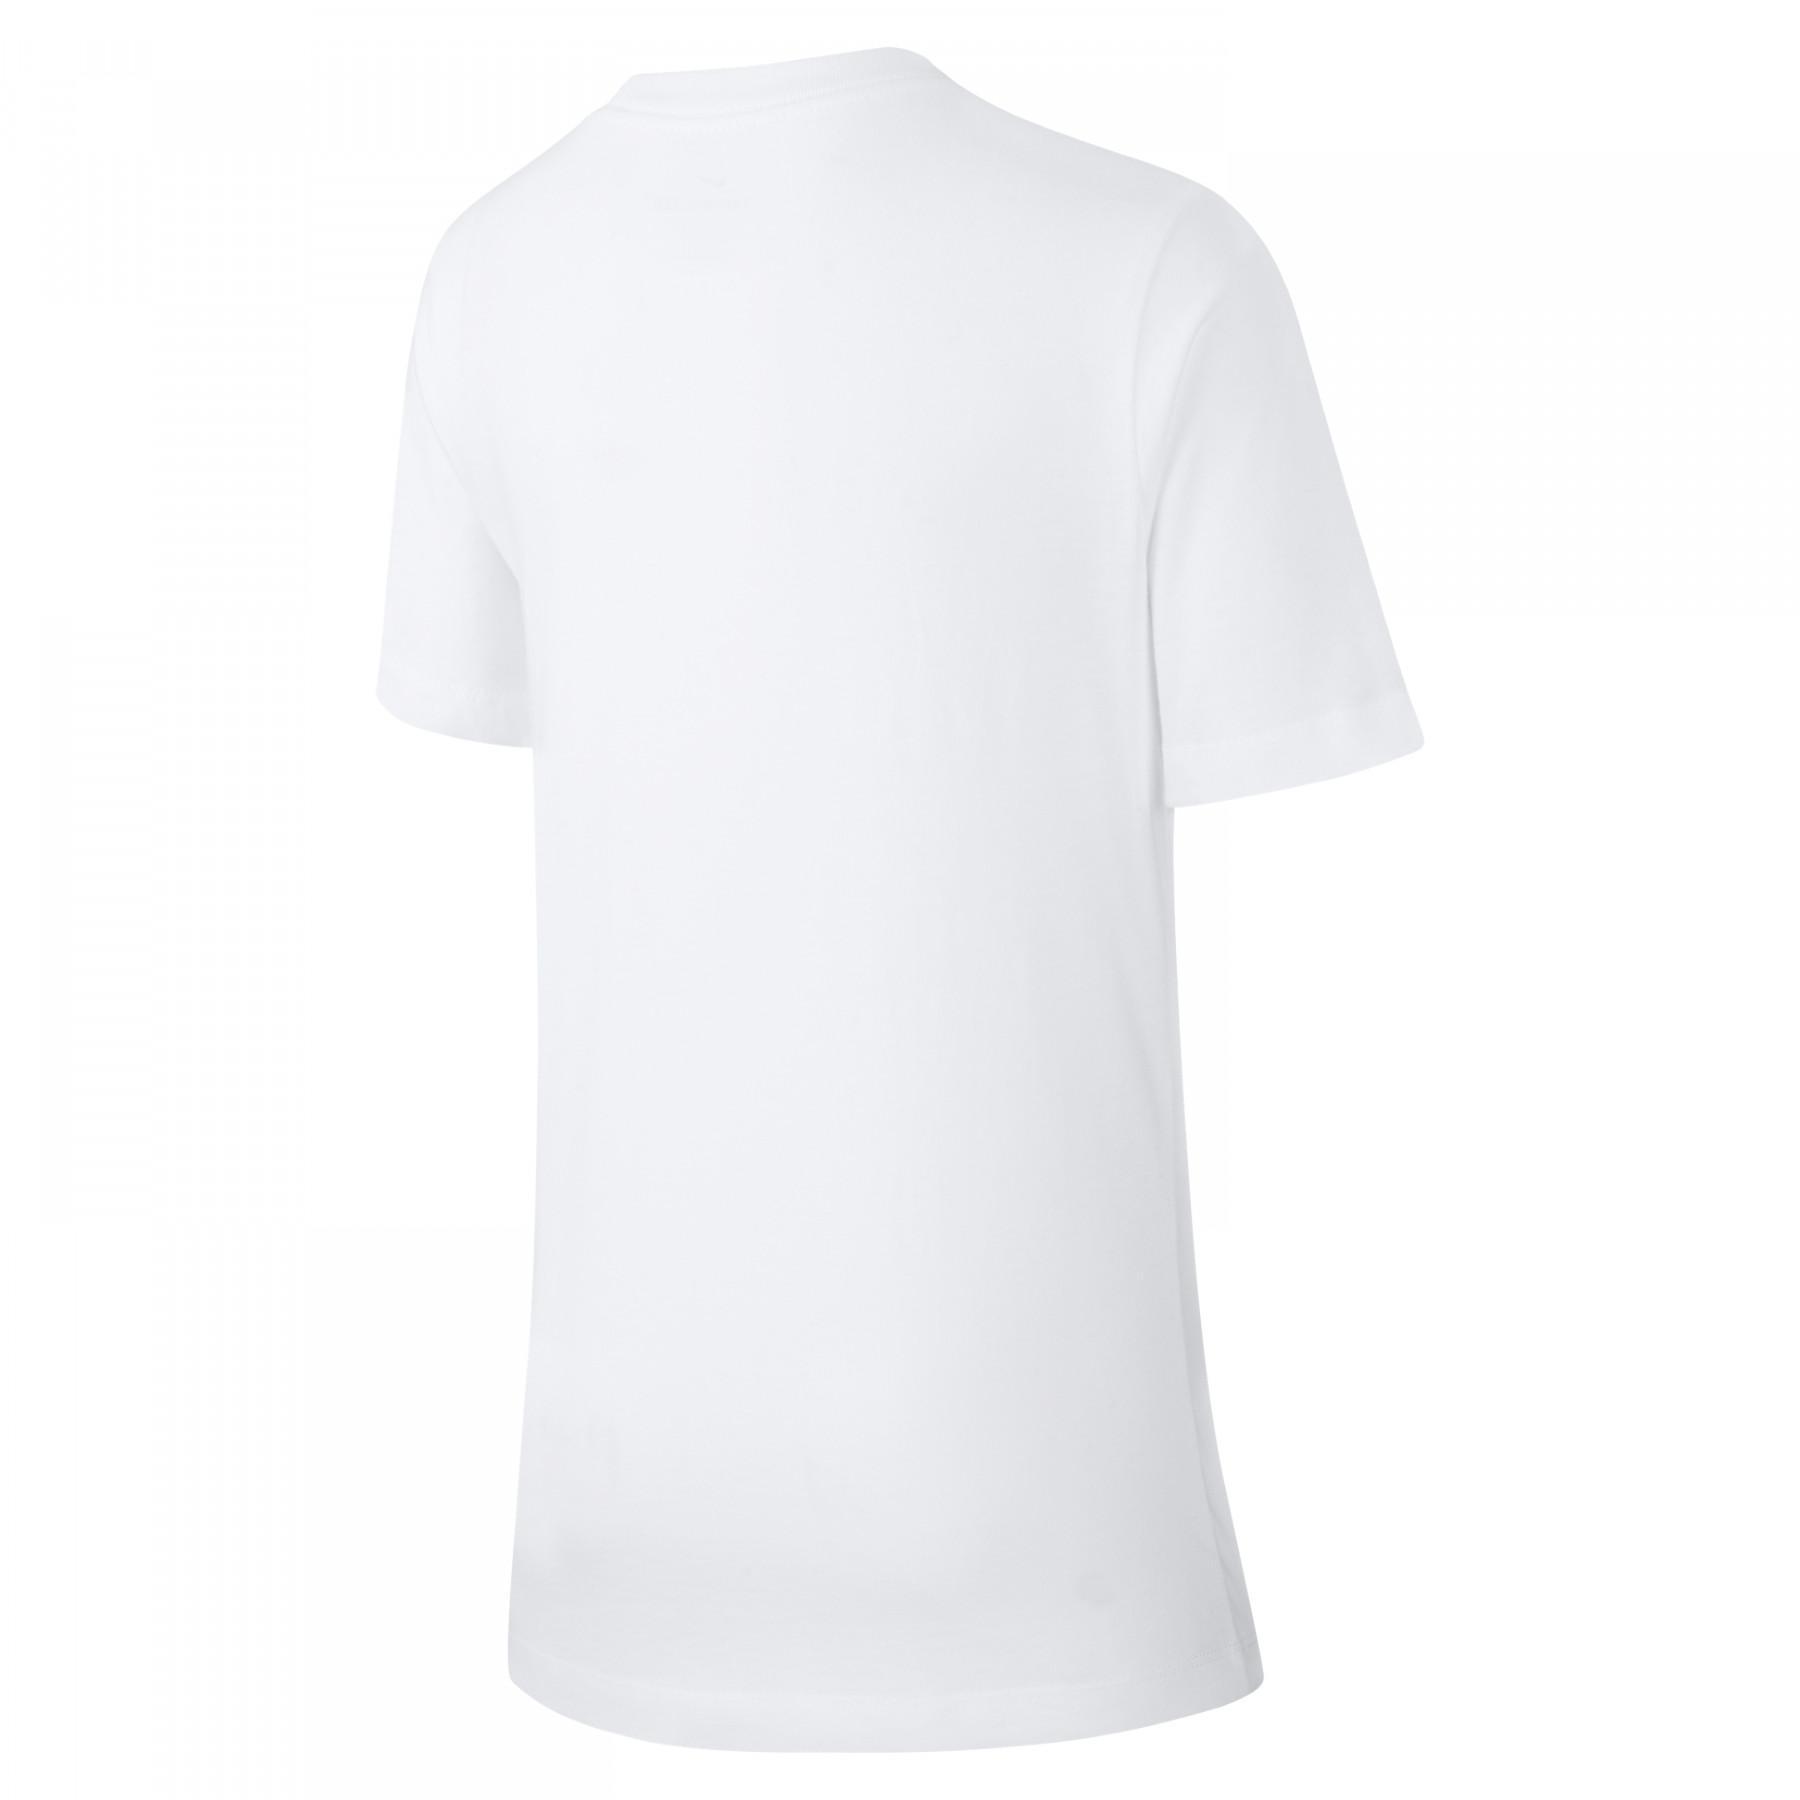 Camiseta para niños PSG Evergreen Crest 2019/20